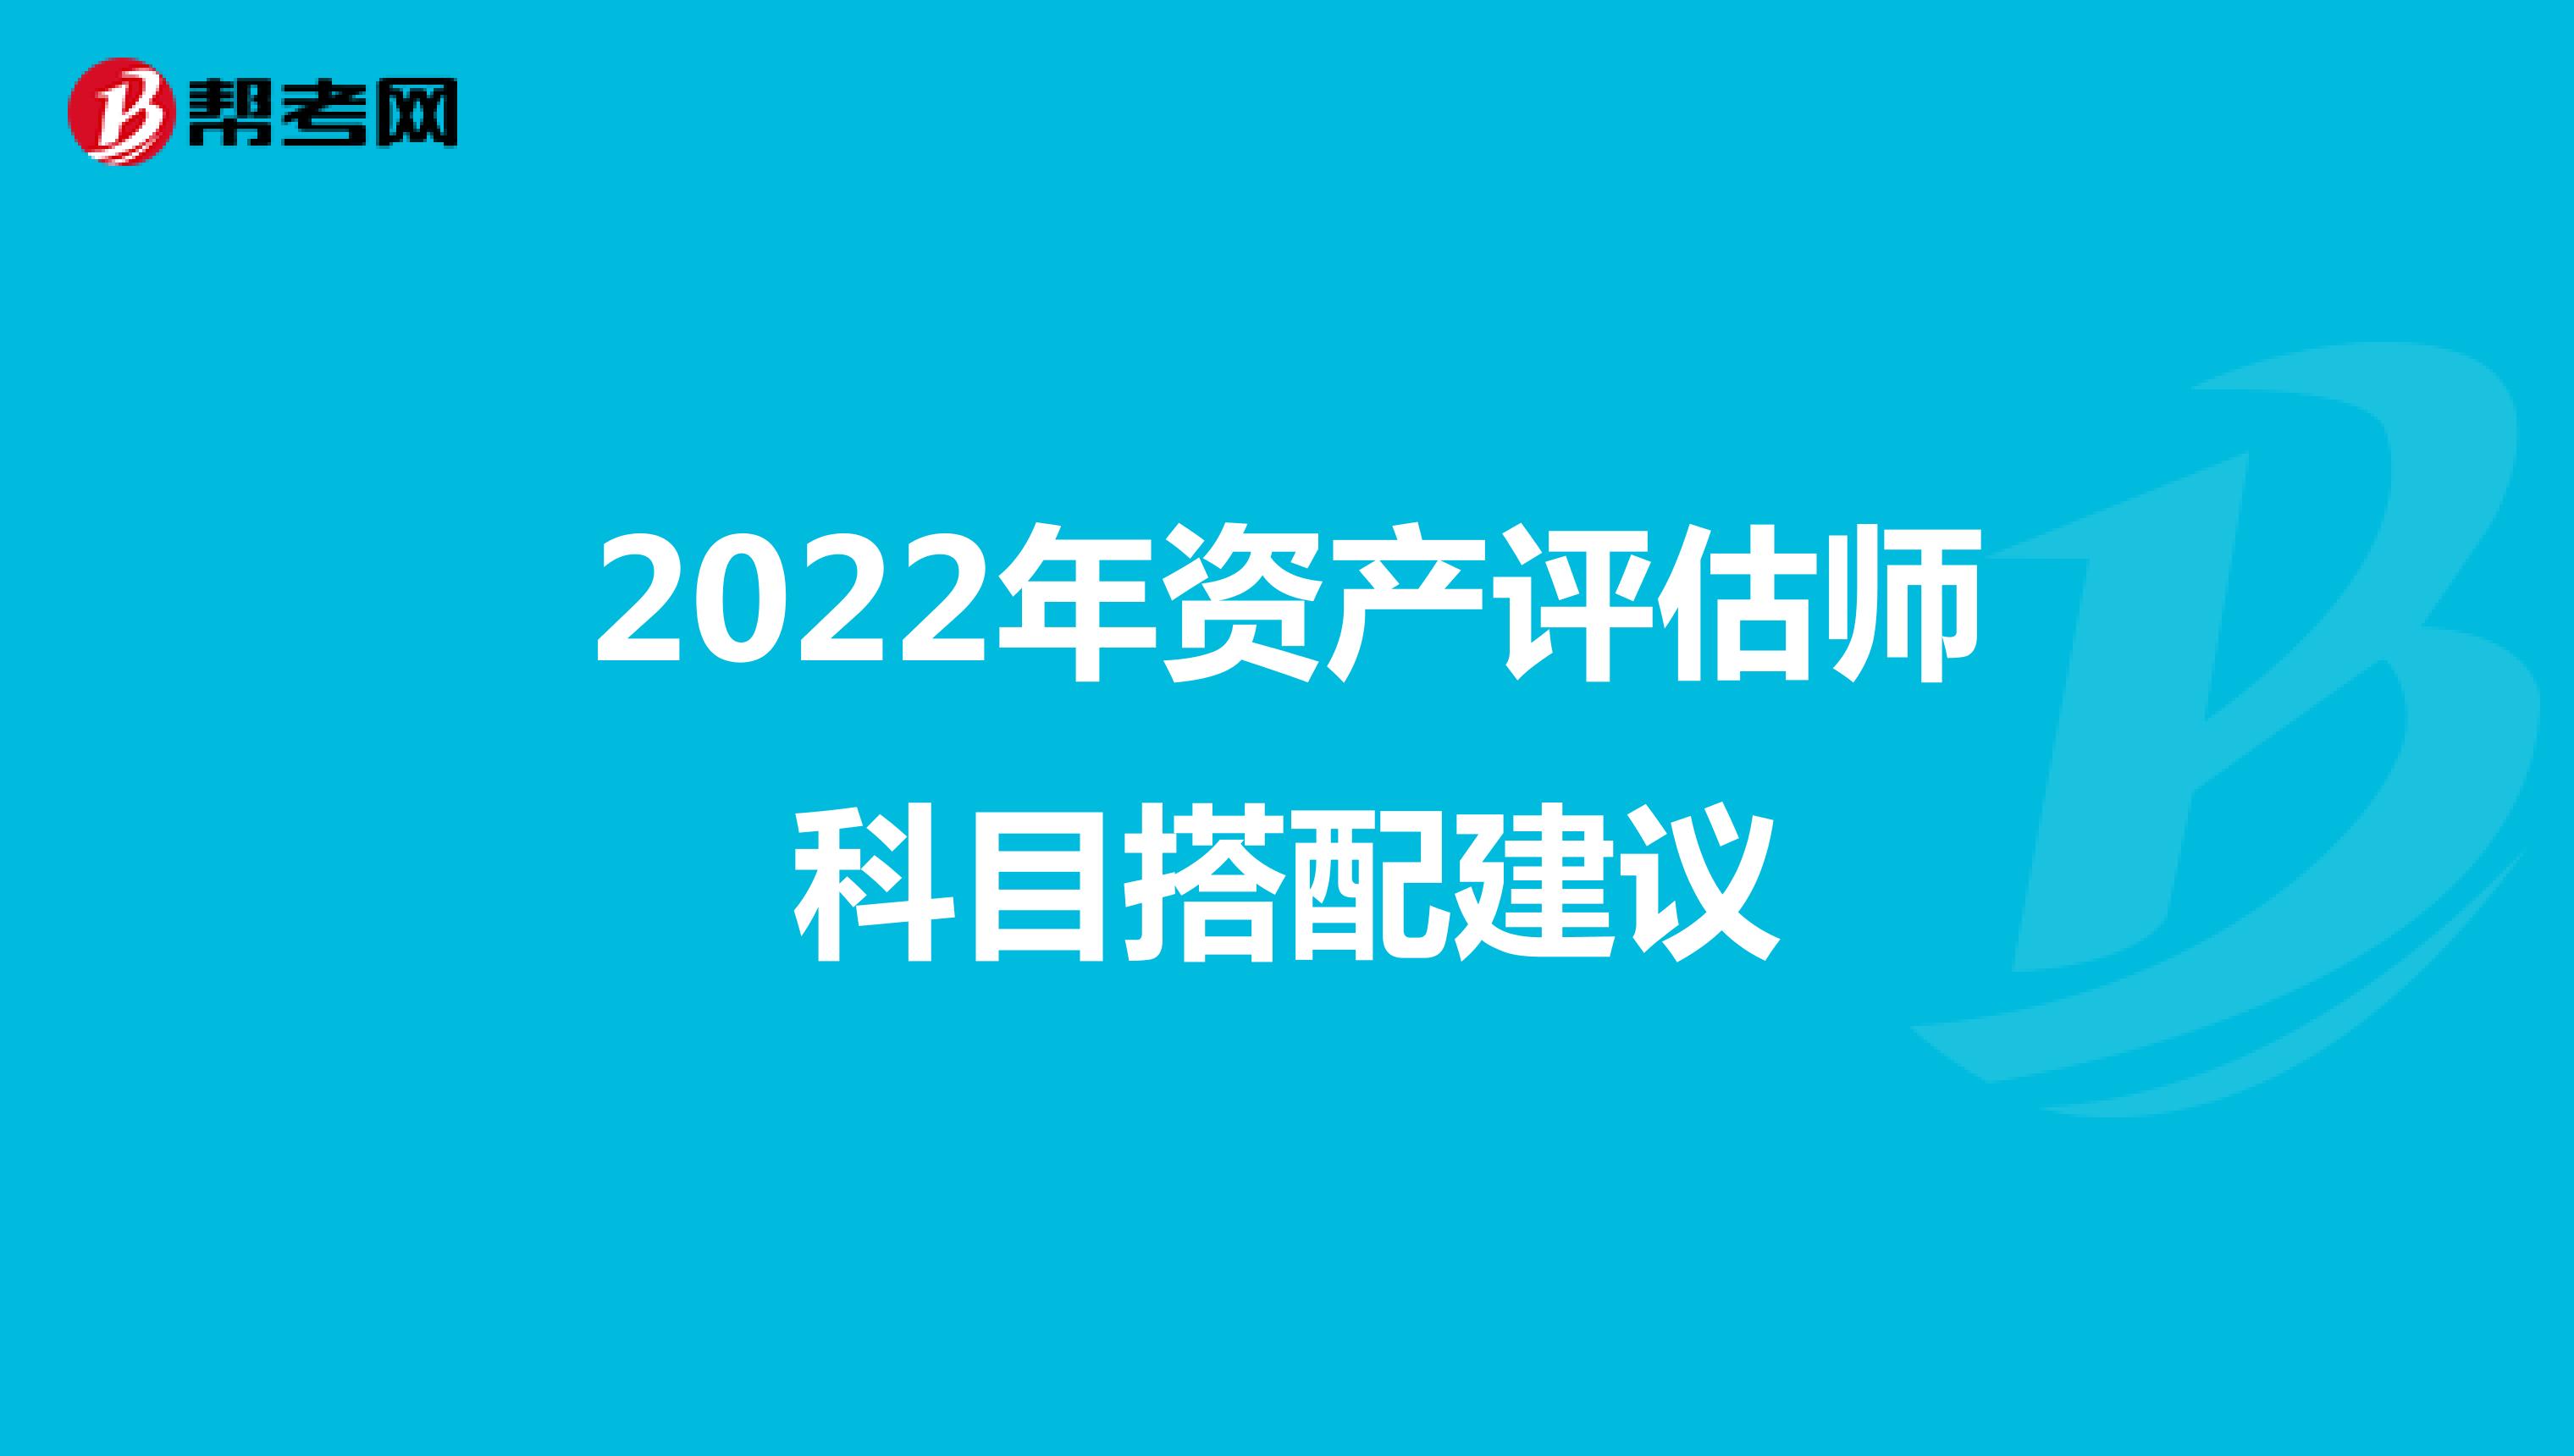 2022年资产评估师科目搭配建议